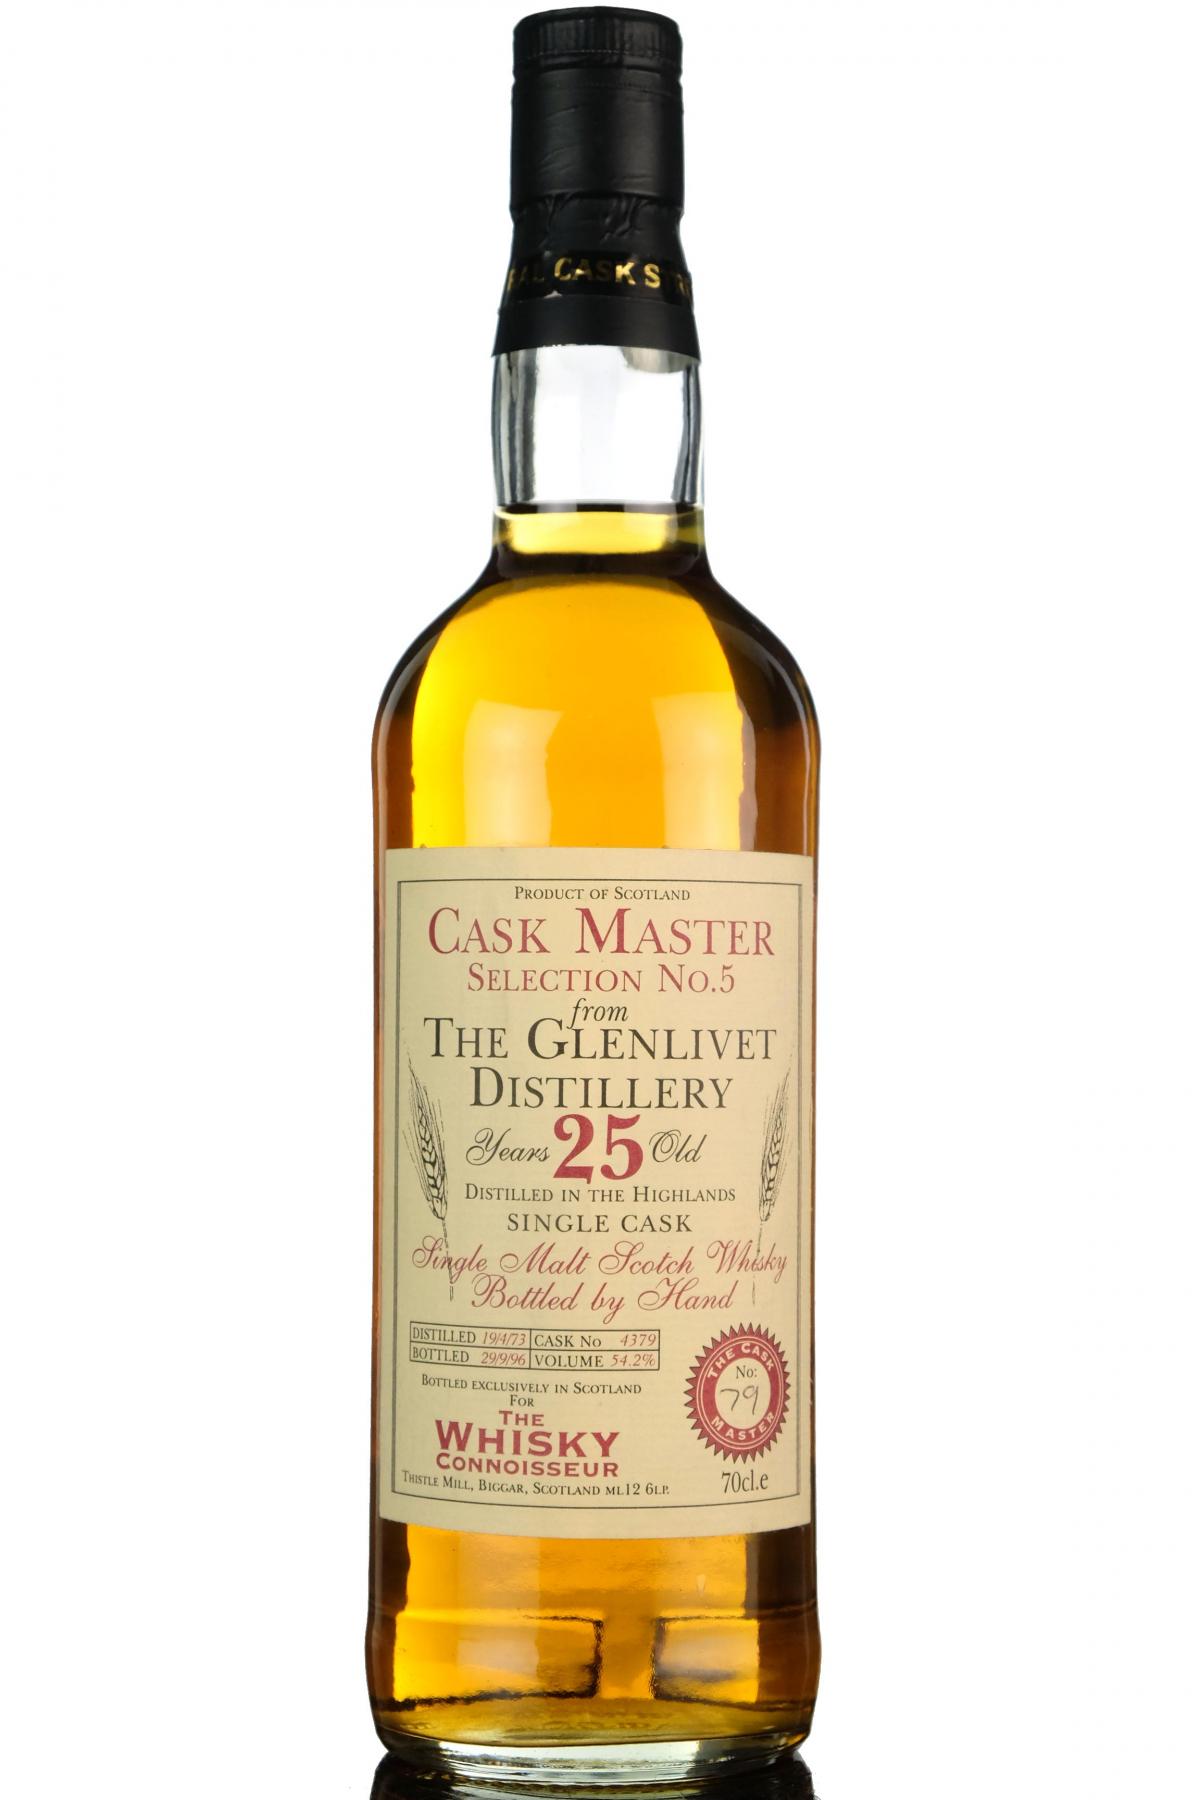 Glenlivet 1973-1996 - 25 Year Old - The Whisky Connoisseur